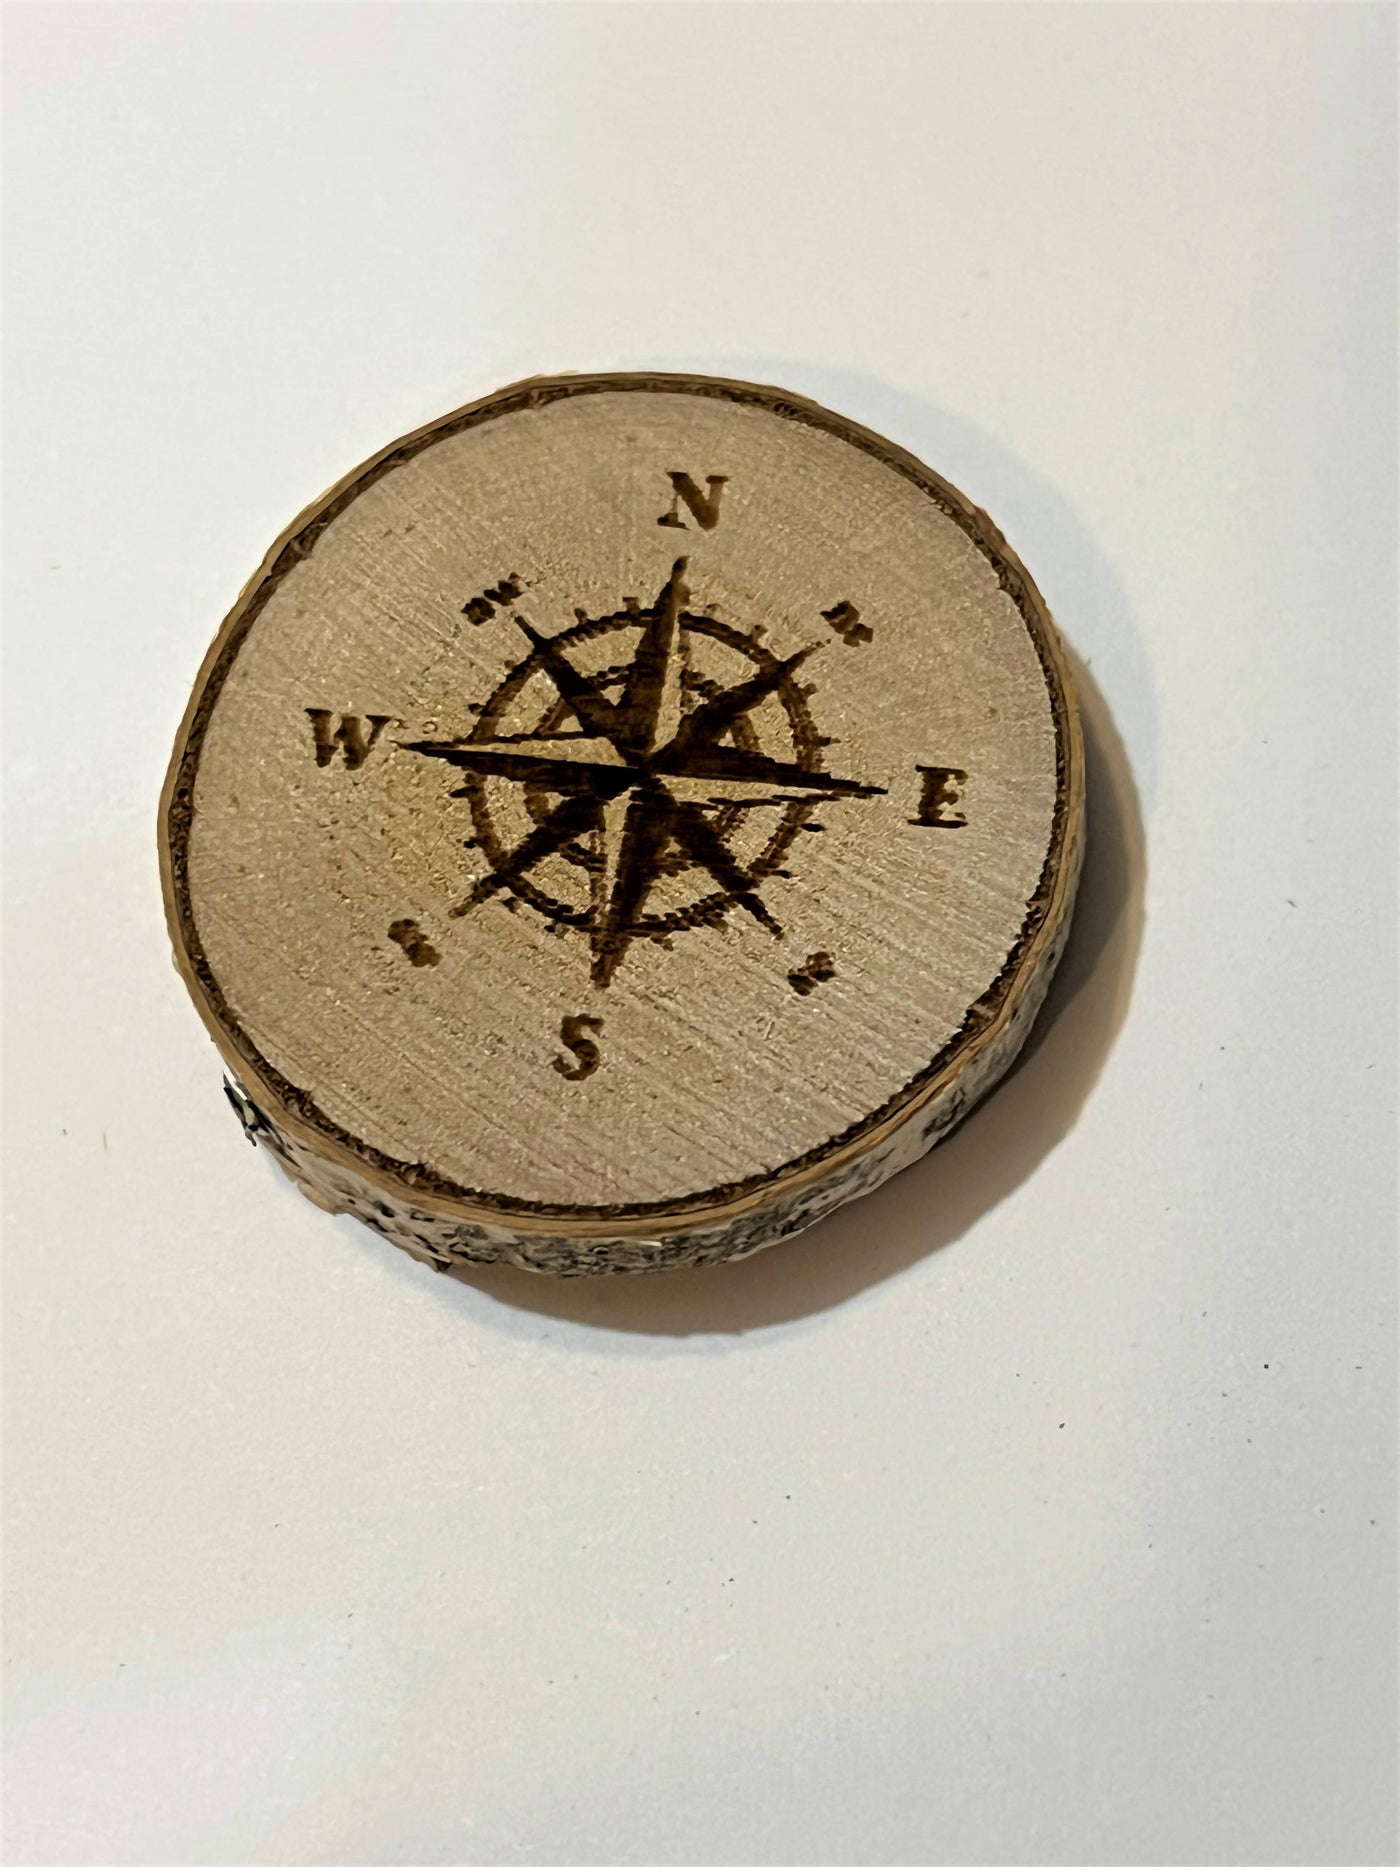 Compass Magnet